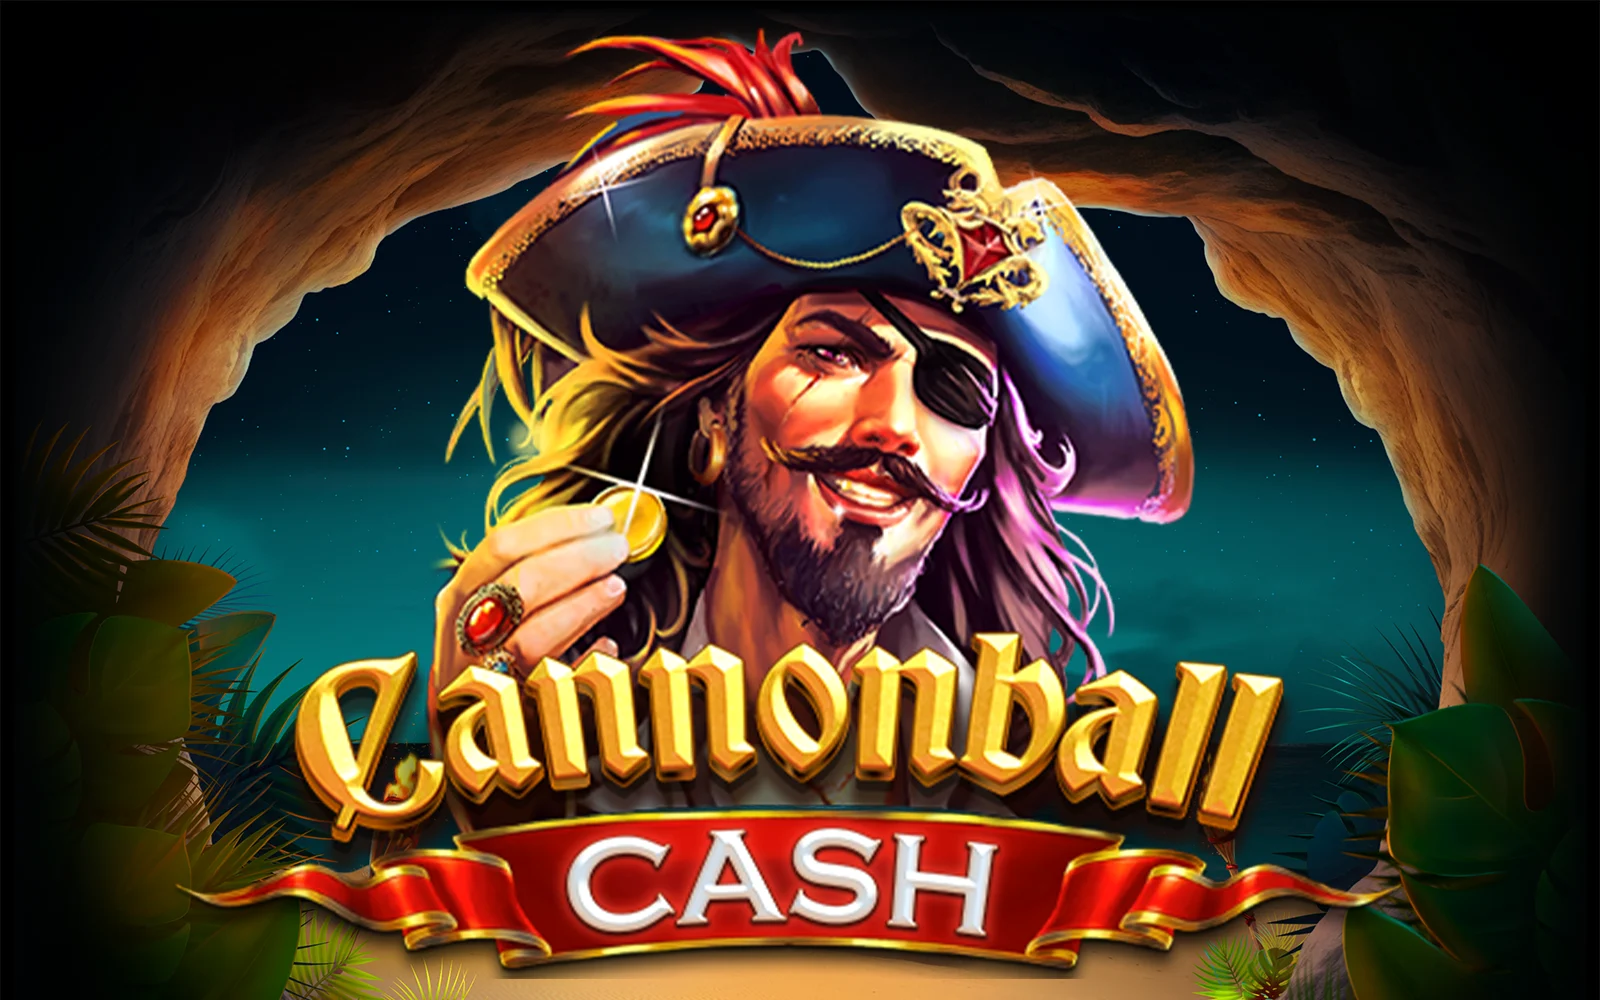 Luaj Cannonball Cash në kazino Starcasino.be në internet